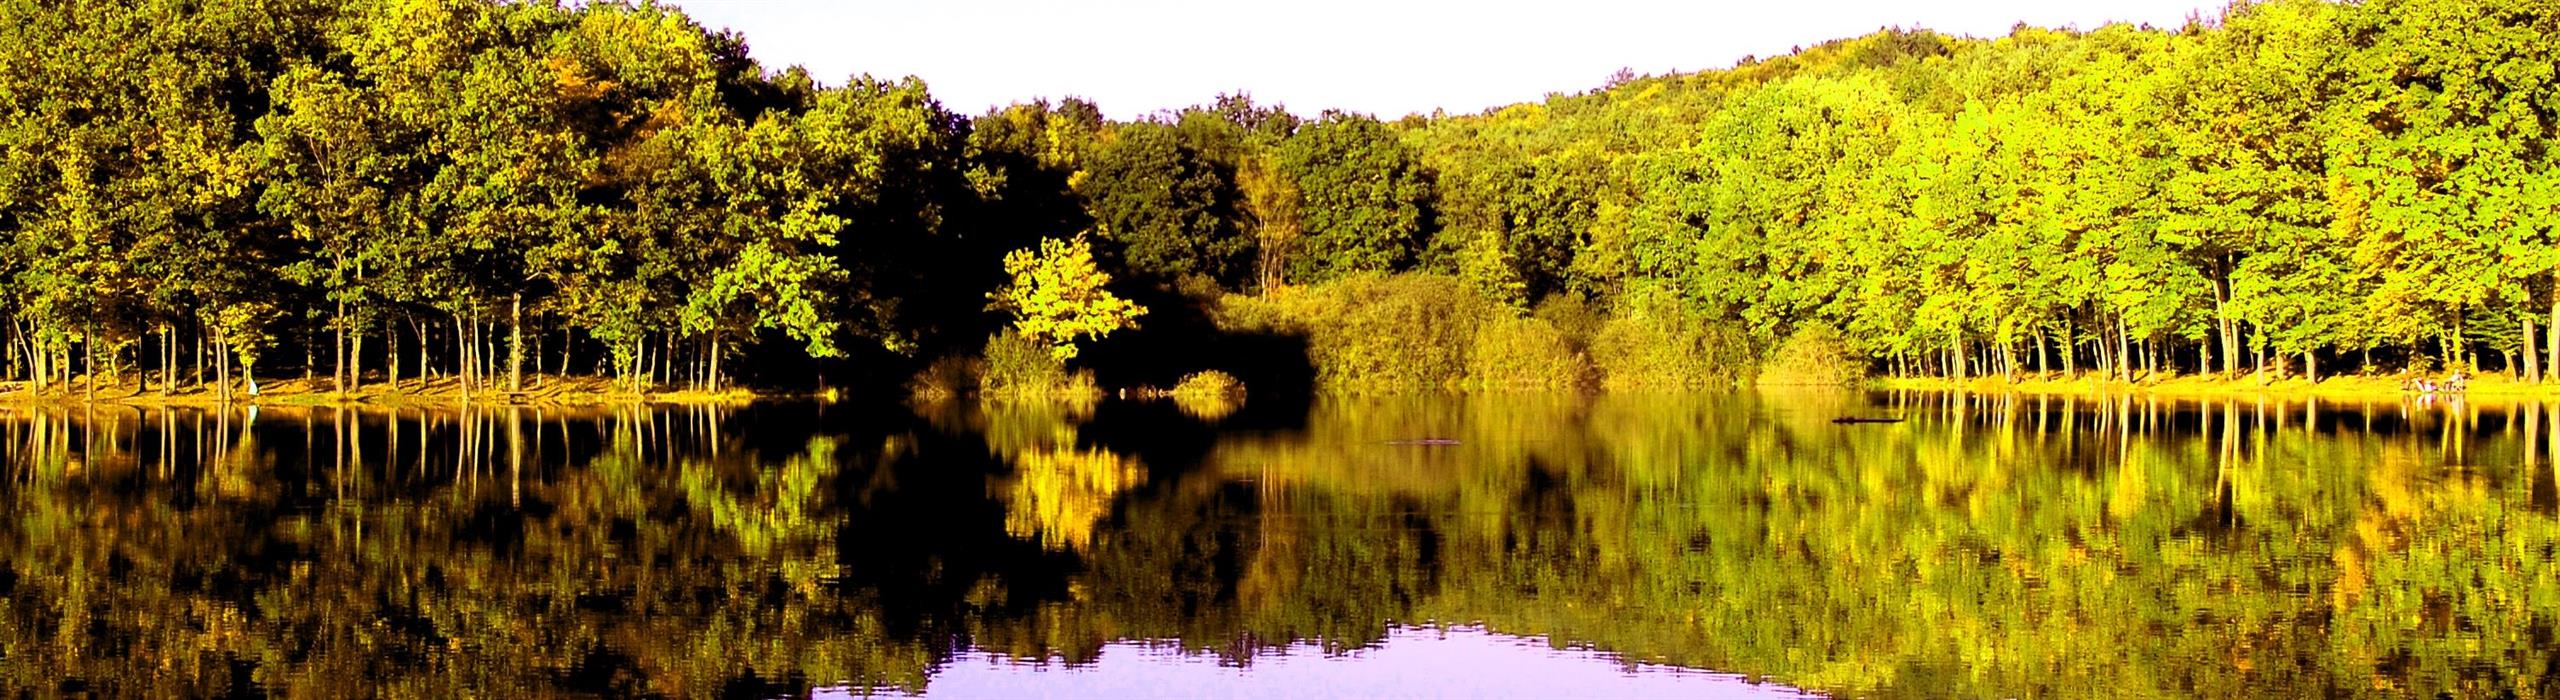 Bukovniško jezero/Bakonaki-tó